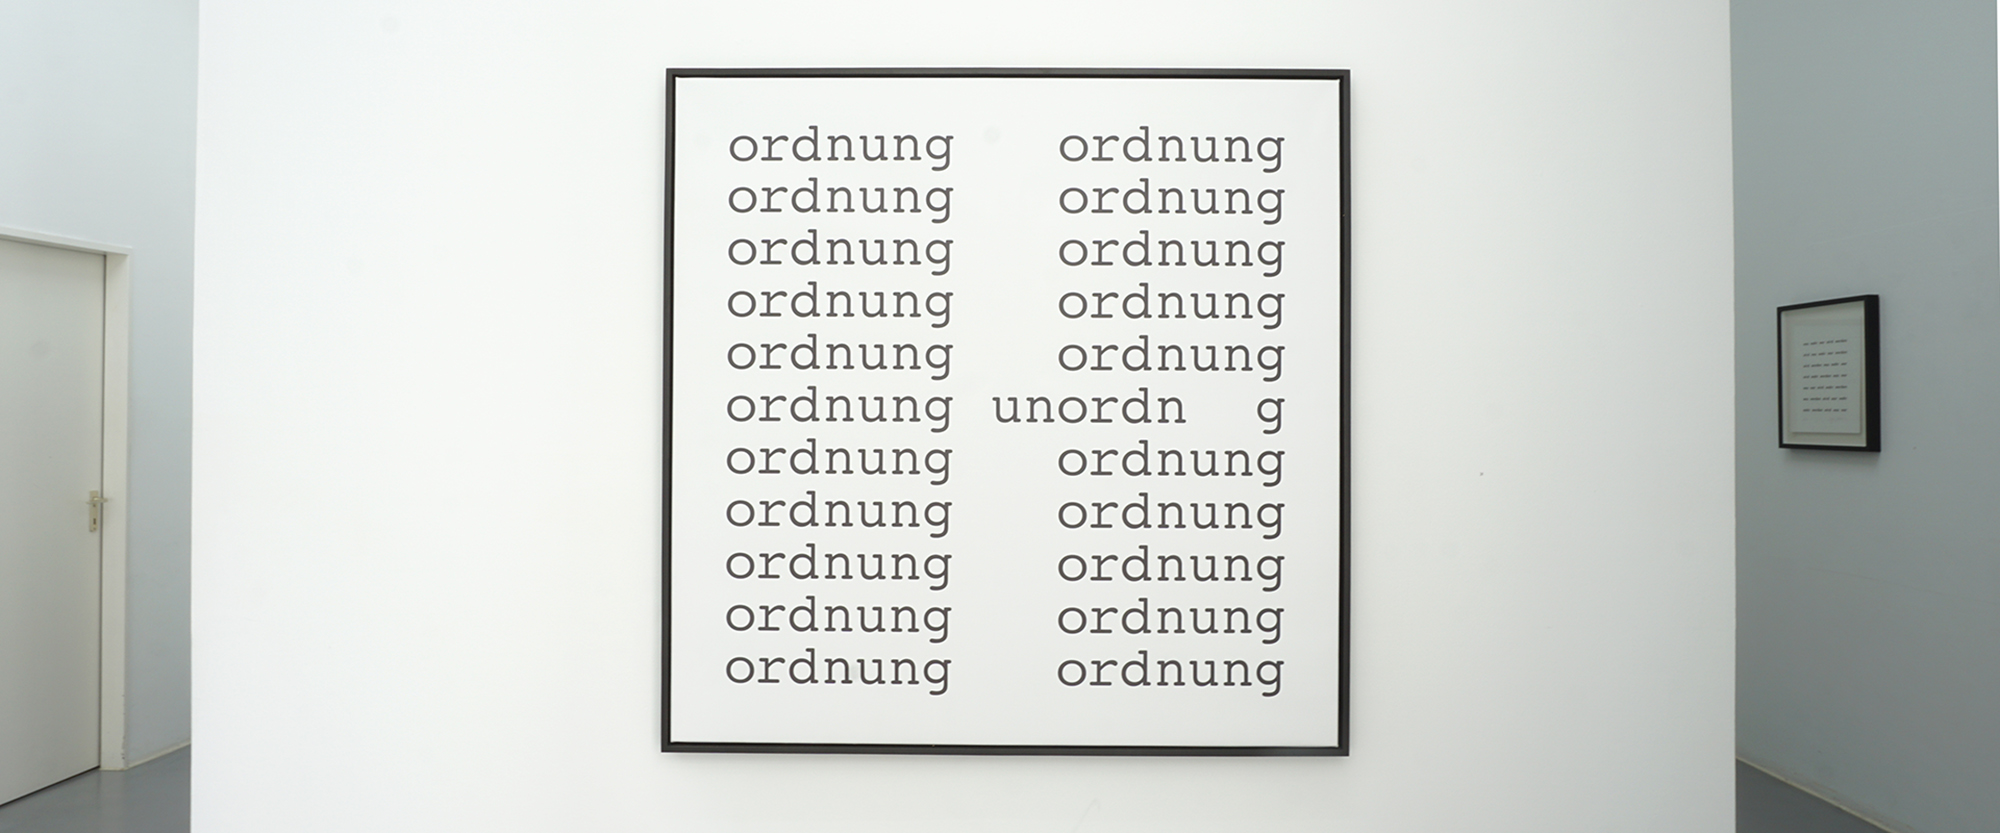 ordnung - unordnung - 1961/2017, Siebdruck auf Leinwand, Auflage 5/5, 120 x 120 cm